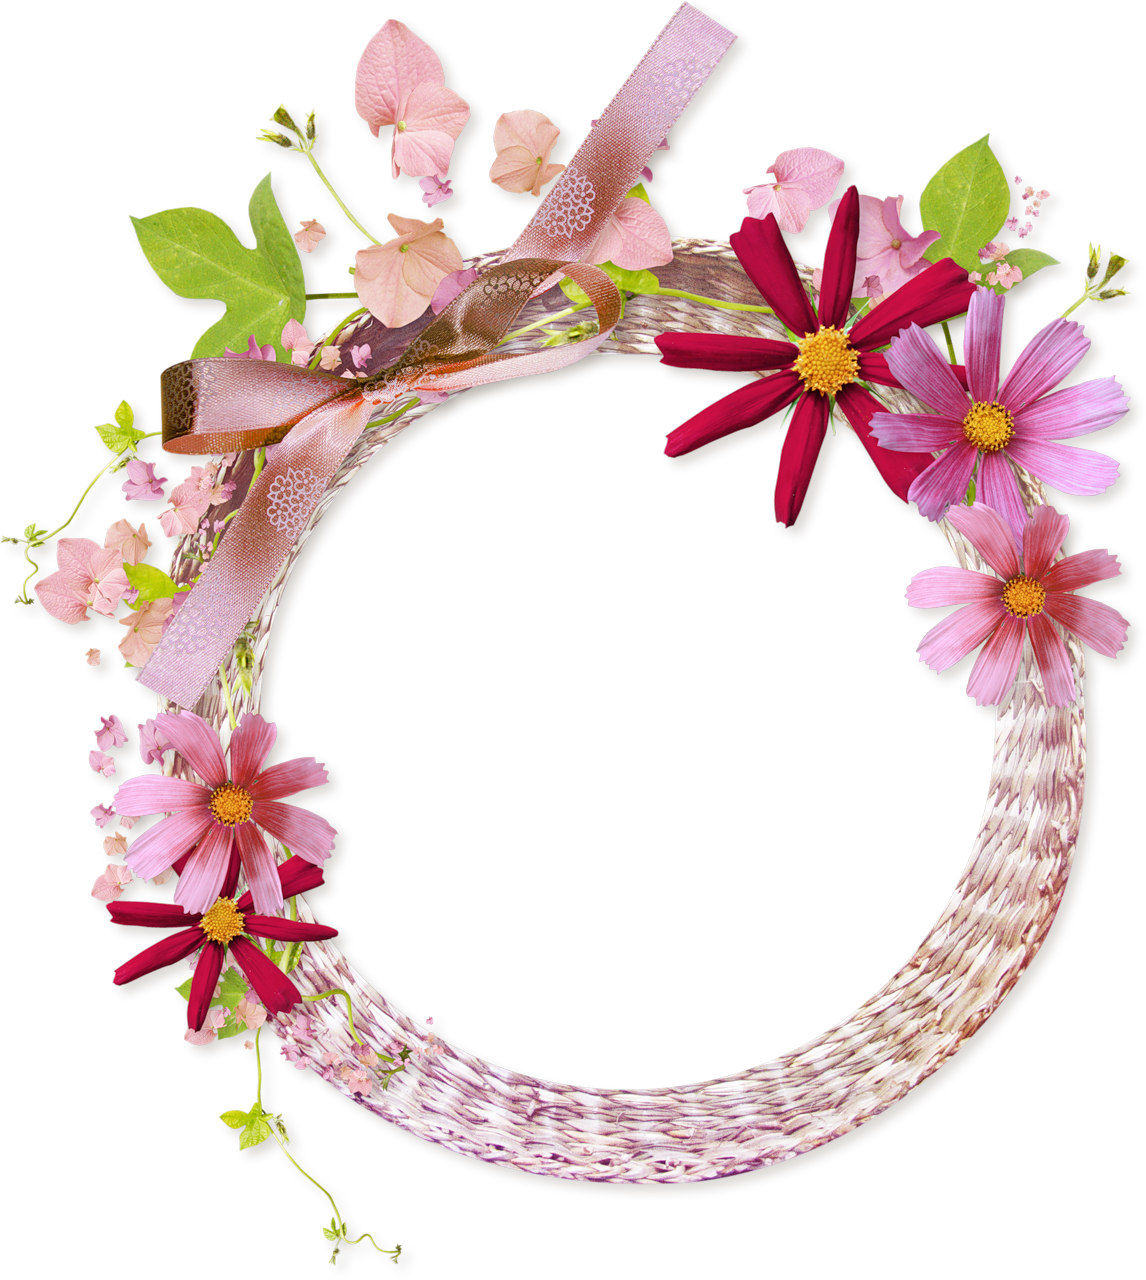 Pink Flower Frame Transparent Background PNG Image